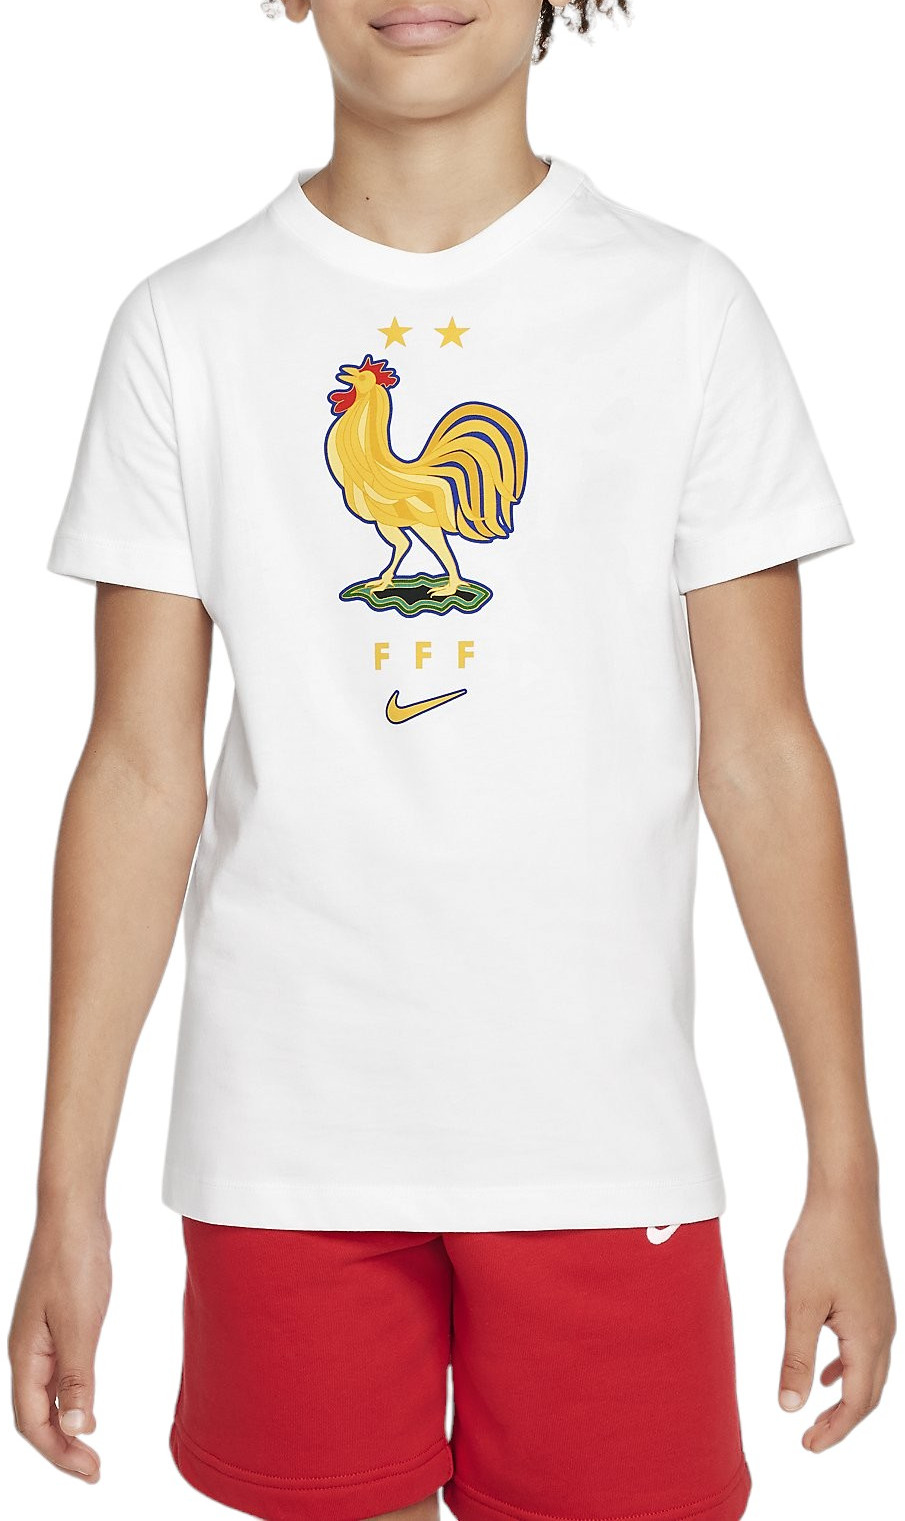 Tričko s krátkým rukávem pro větší děti Nike Francie Crest